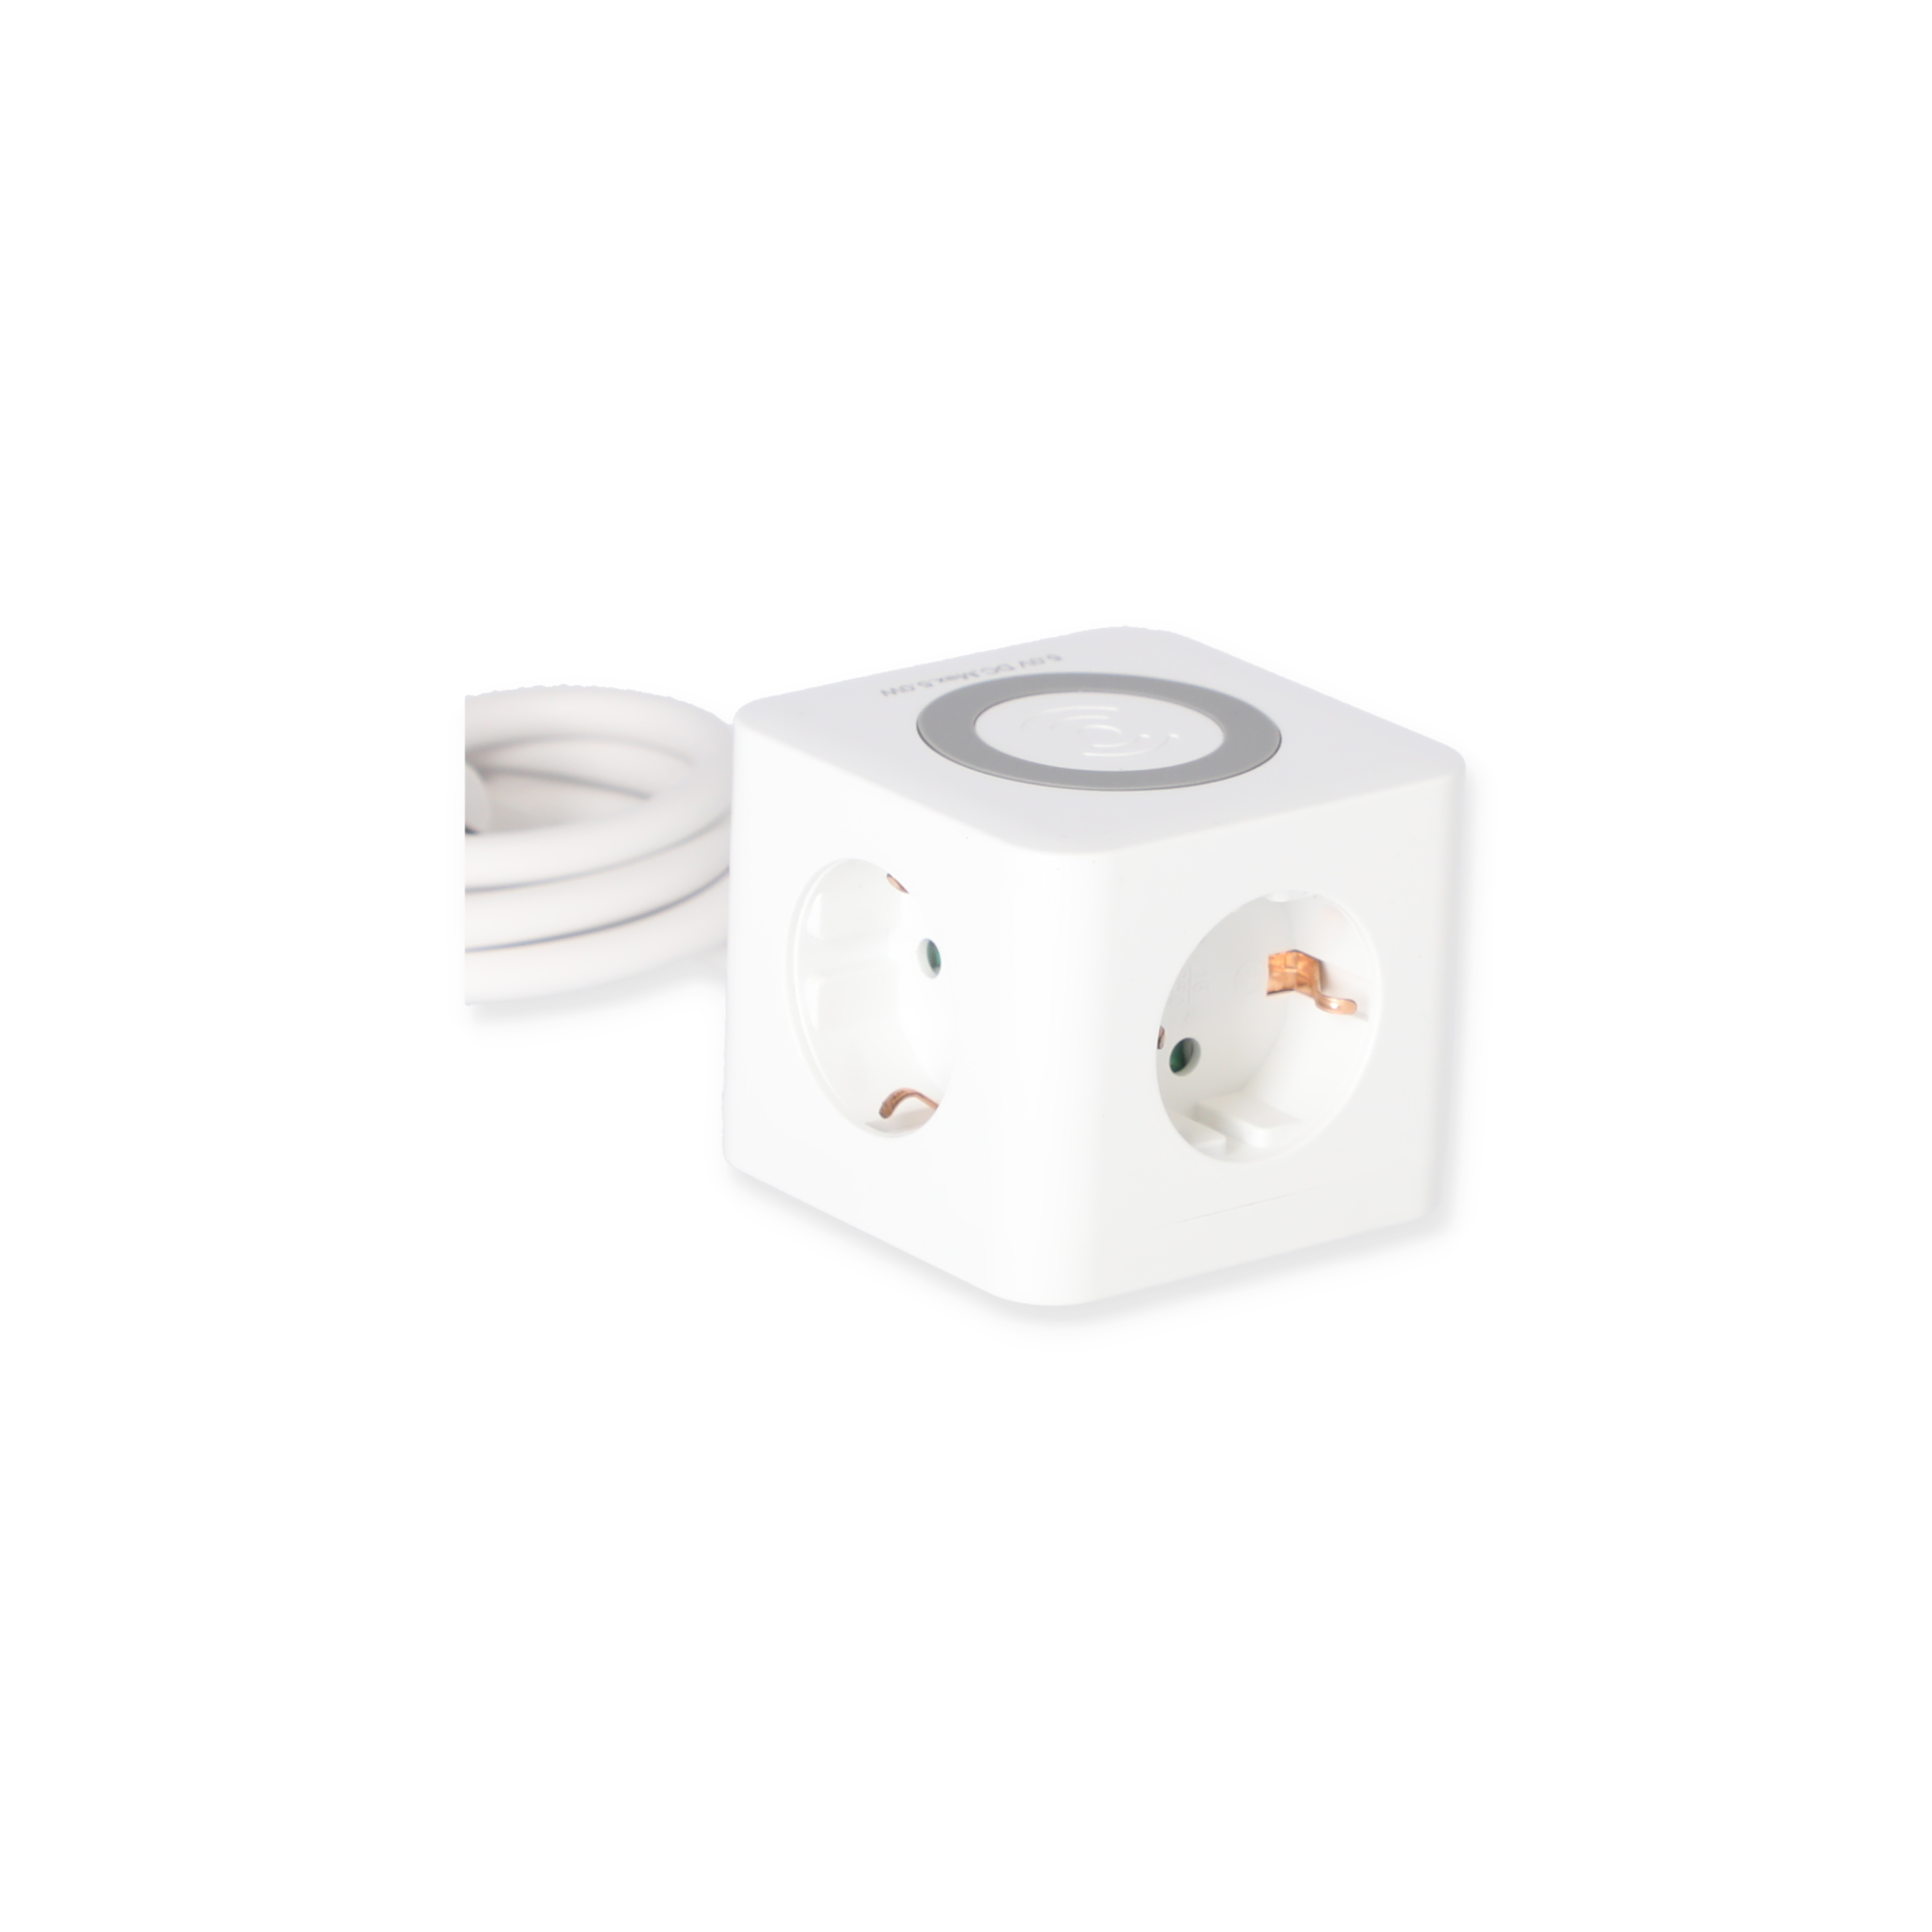 Induktions-Steckdosenwürfel weiß 3-fach mit 3 USB-Ports + product picture